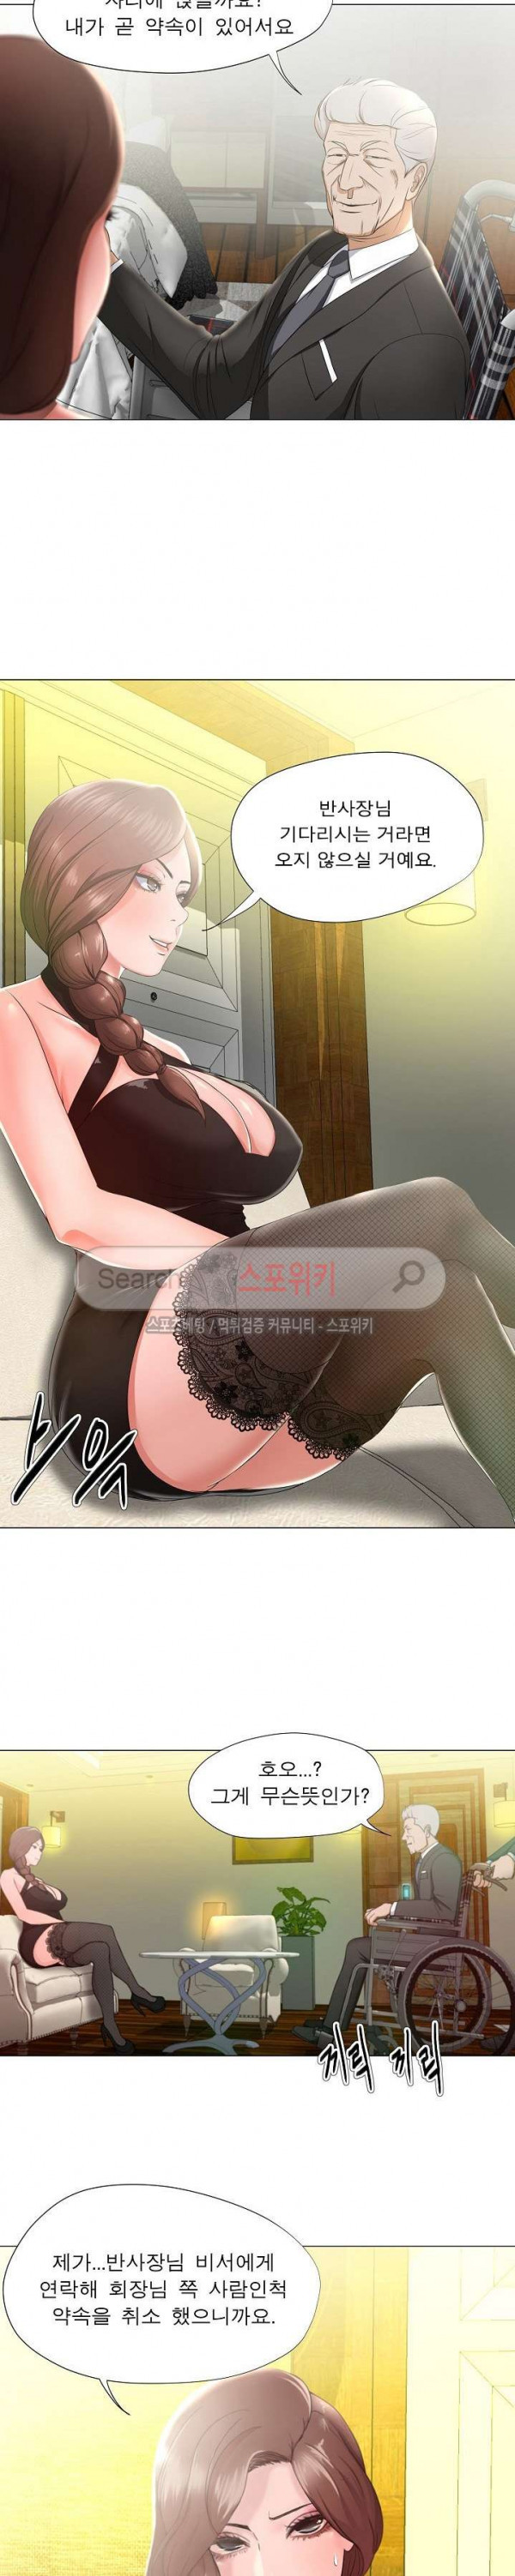 The image Slut Woman Raw - Chapter 15 - kw4oJlGKYPDm3EG - ManhwaManga.io